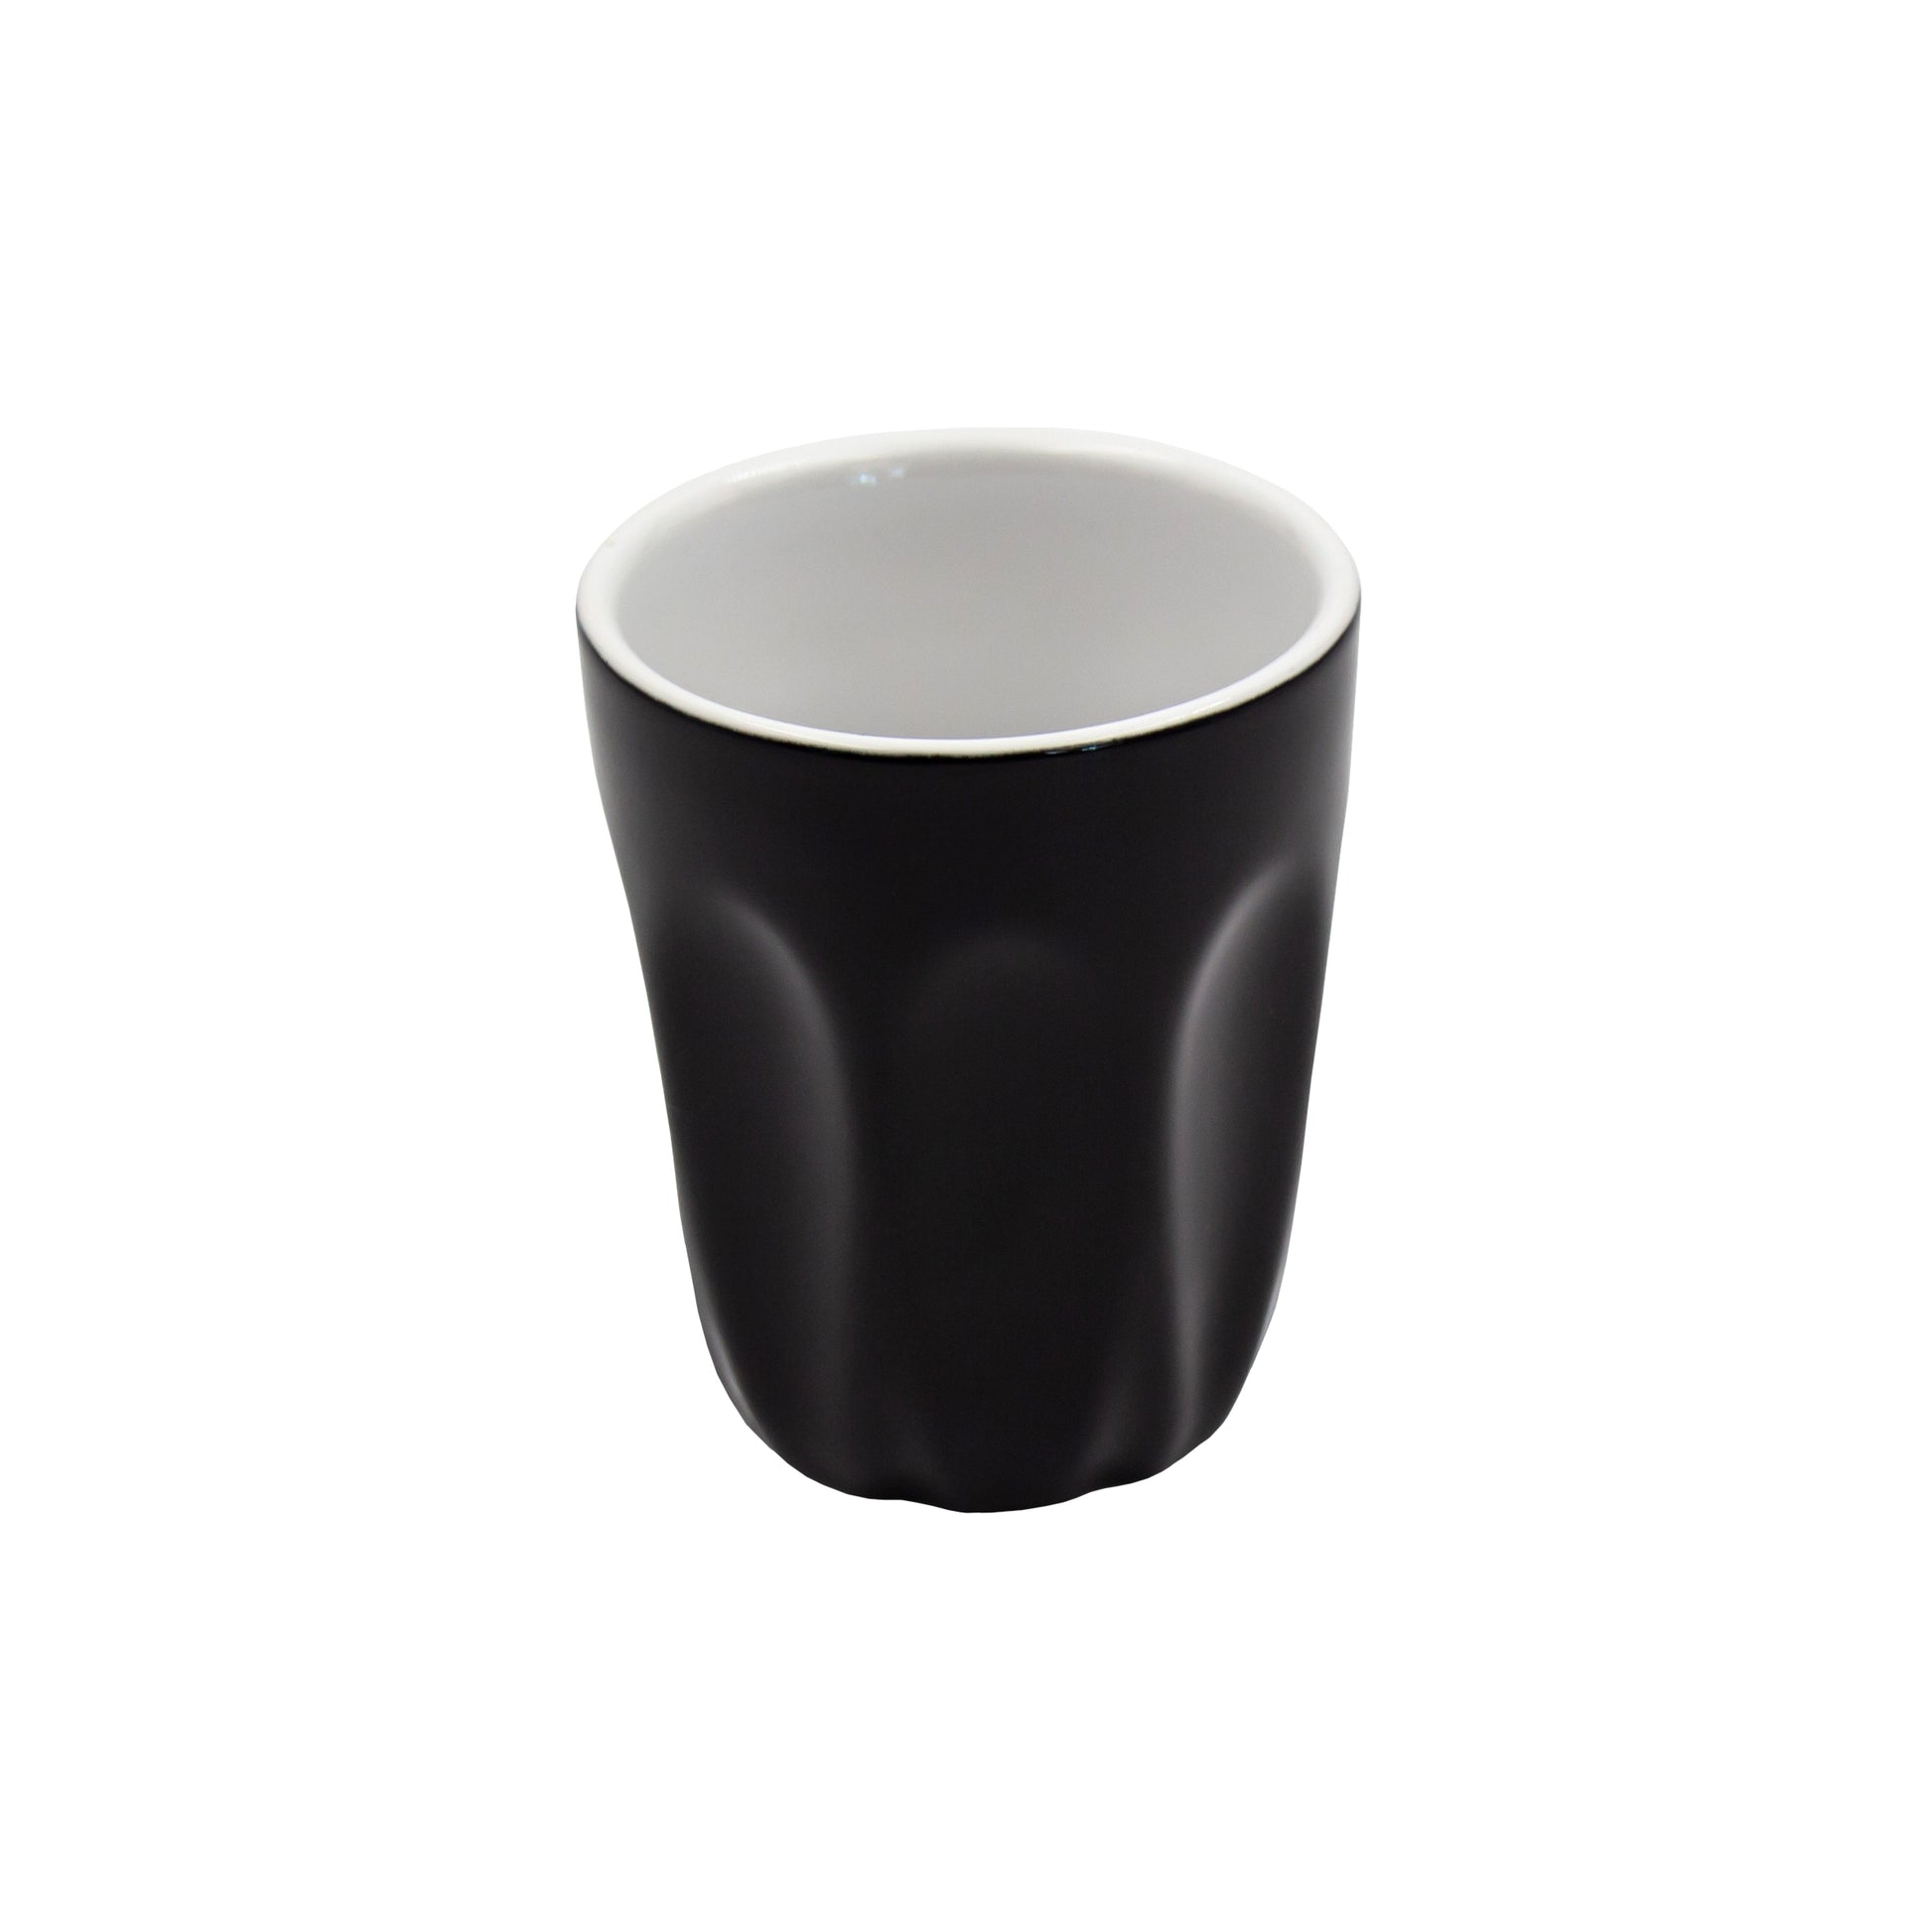 70ml black macchiato coffee cup